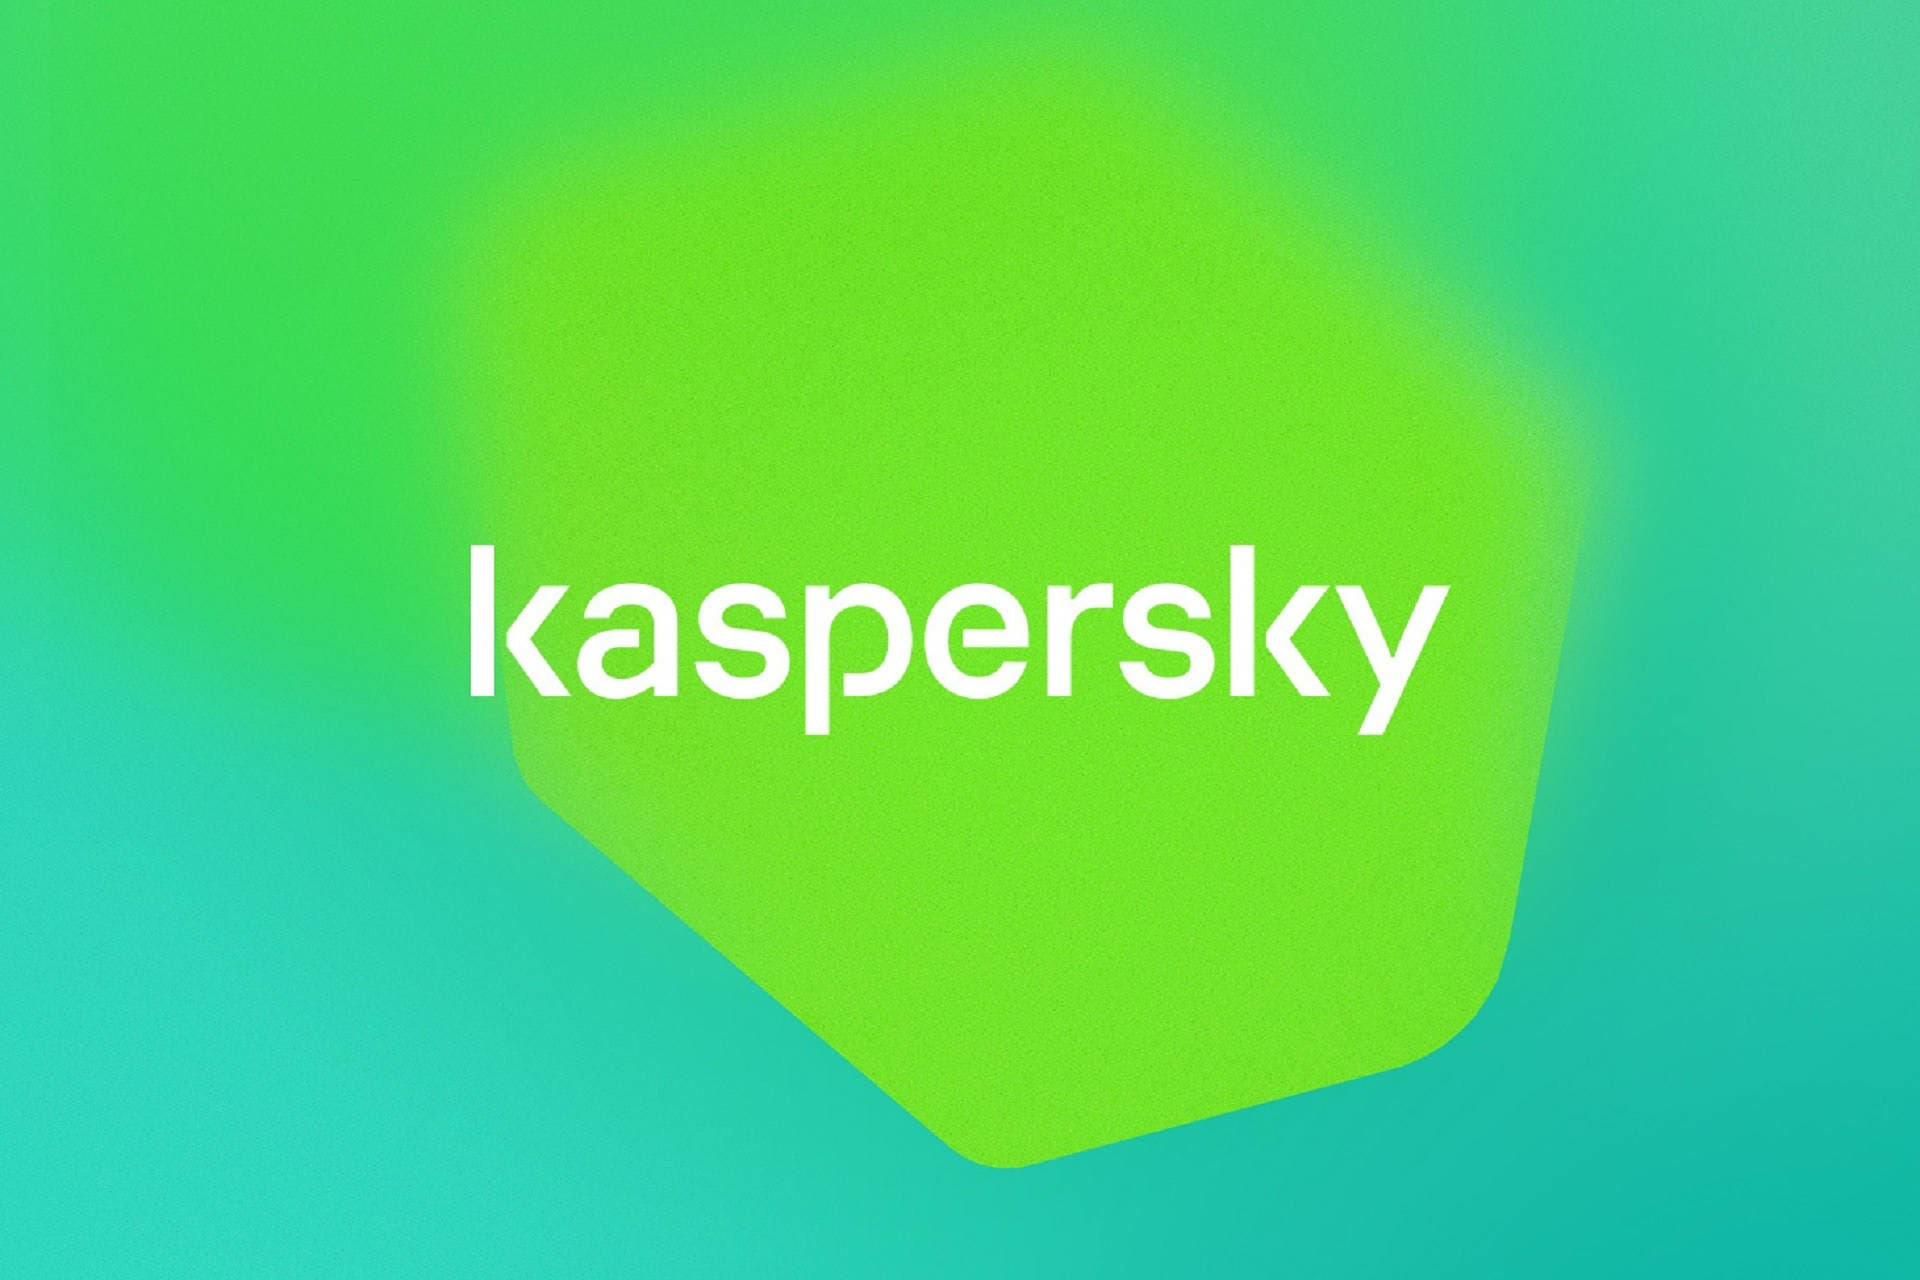 Best Kaspersky deals on Black Friday